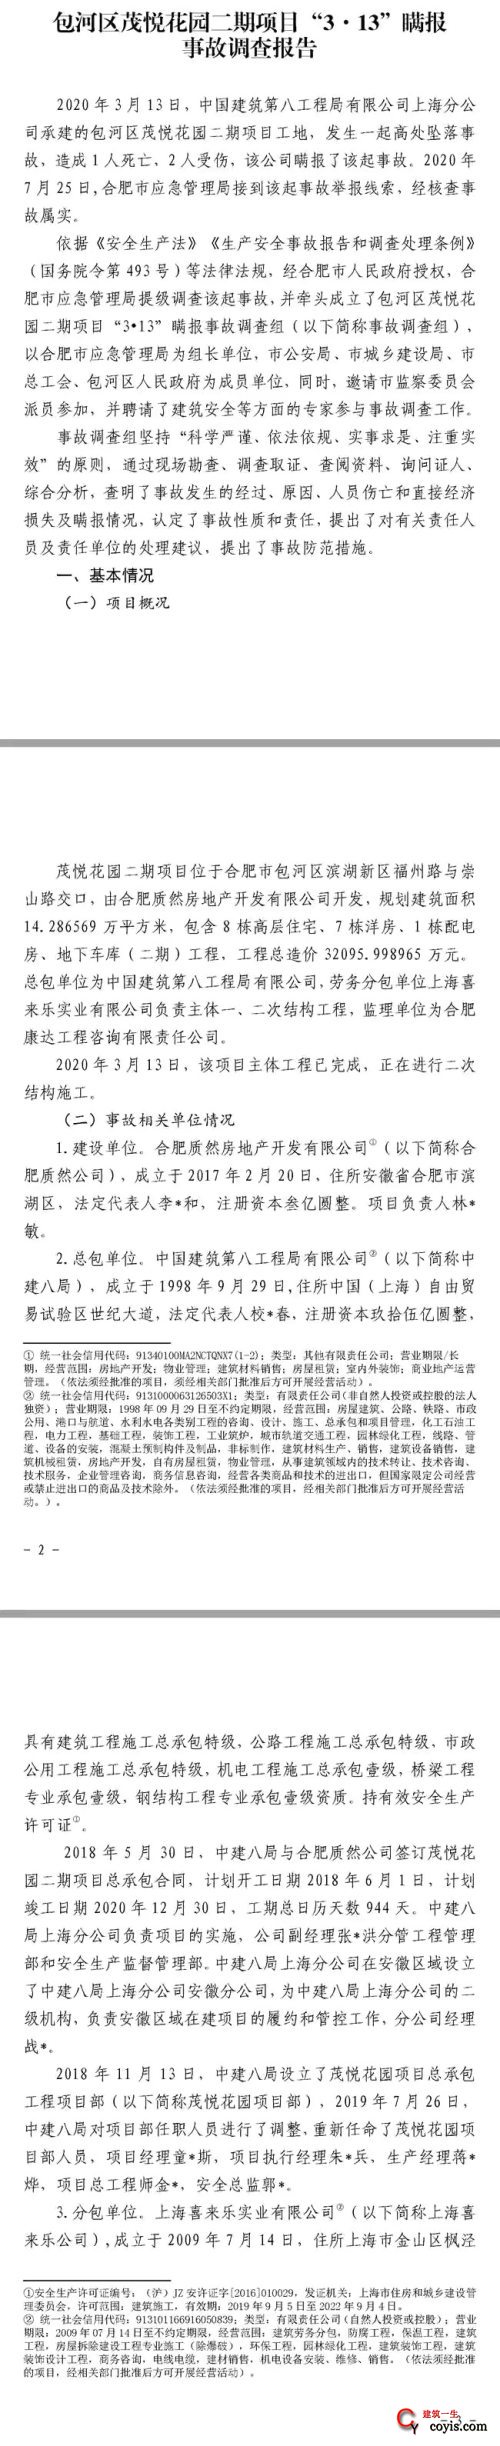 1人死亡、2人受伤，中建八局上海分公司竟然瞒报合肥施工项目事故